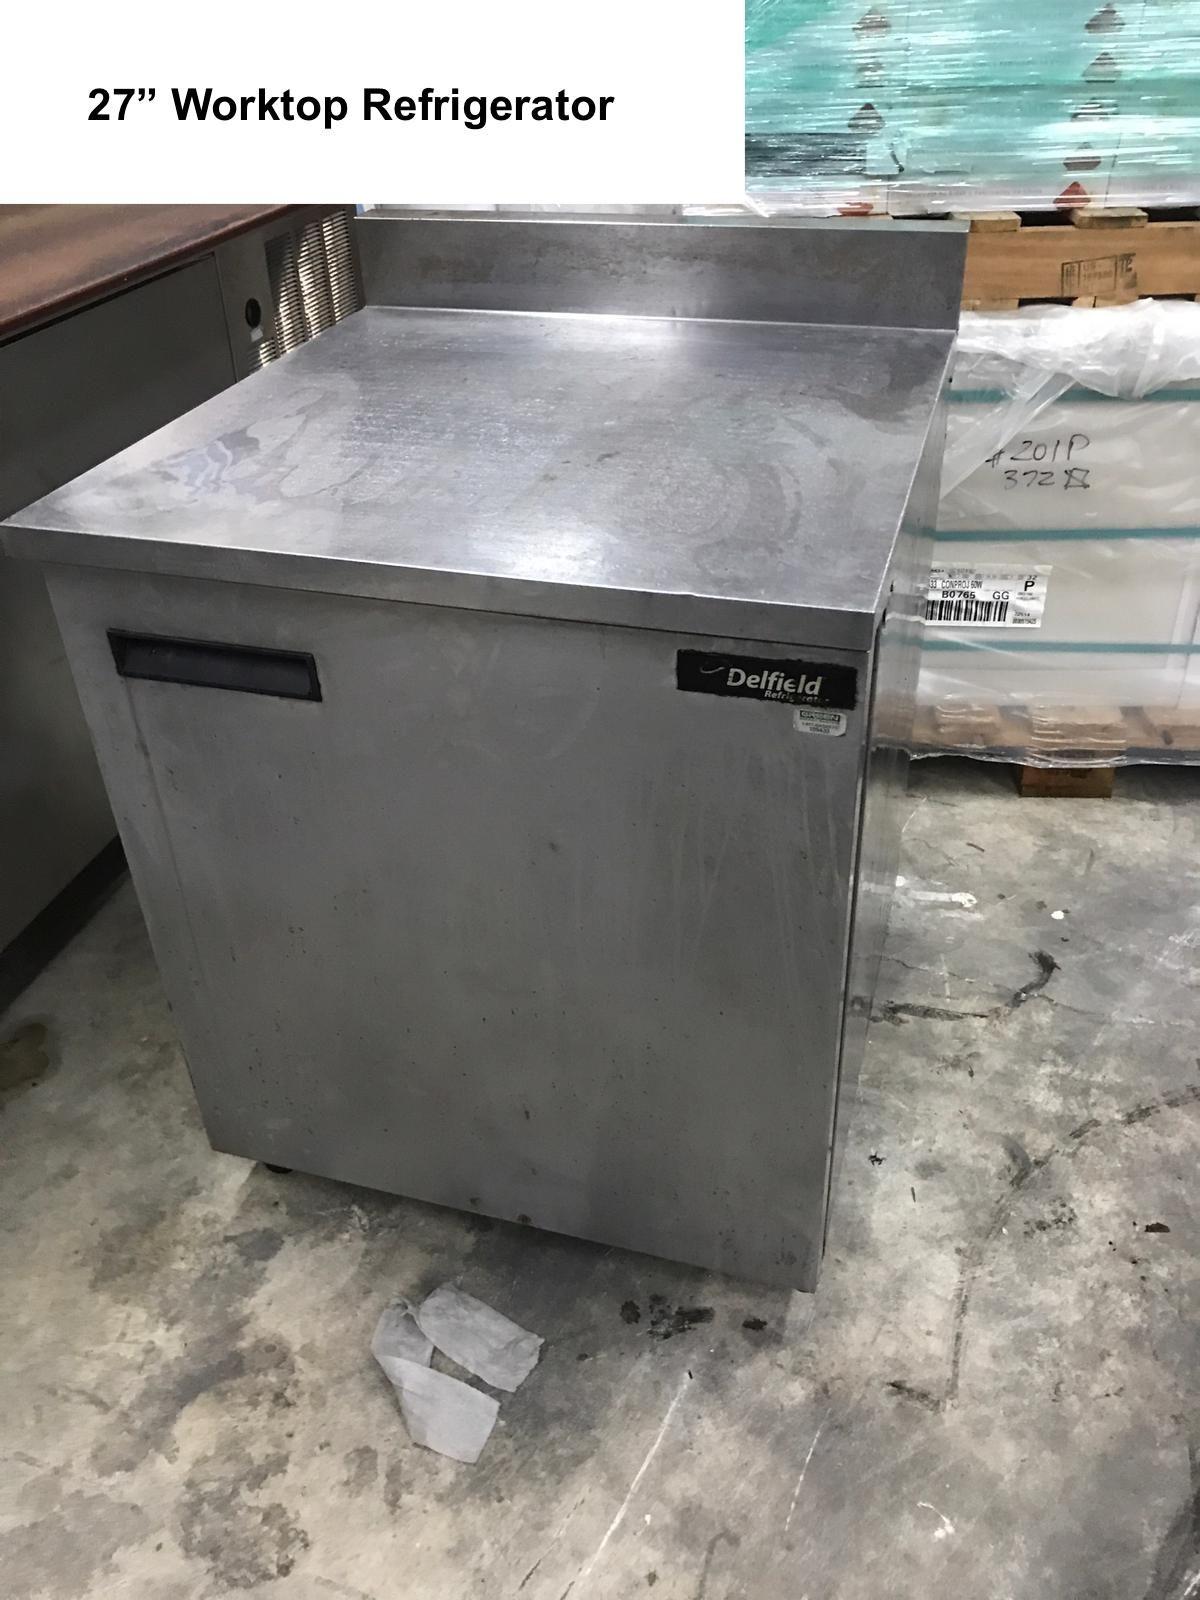 Delfield Worktop Refrigerator